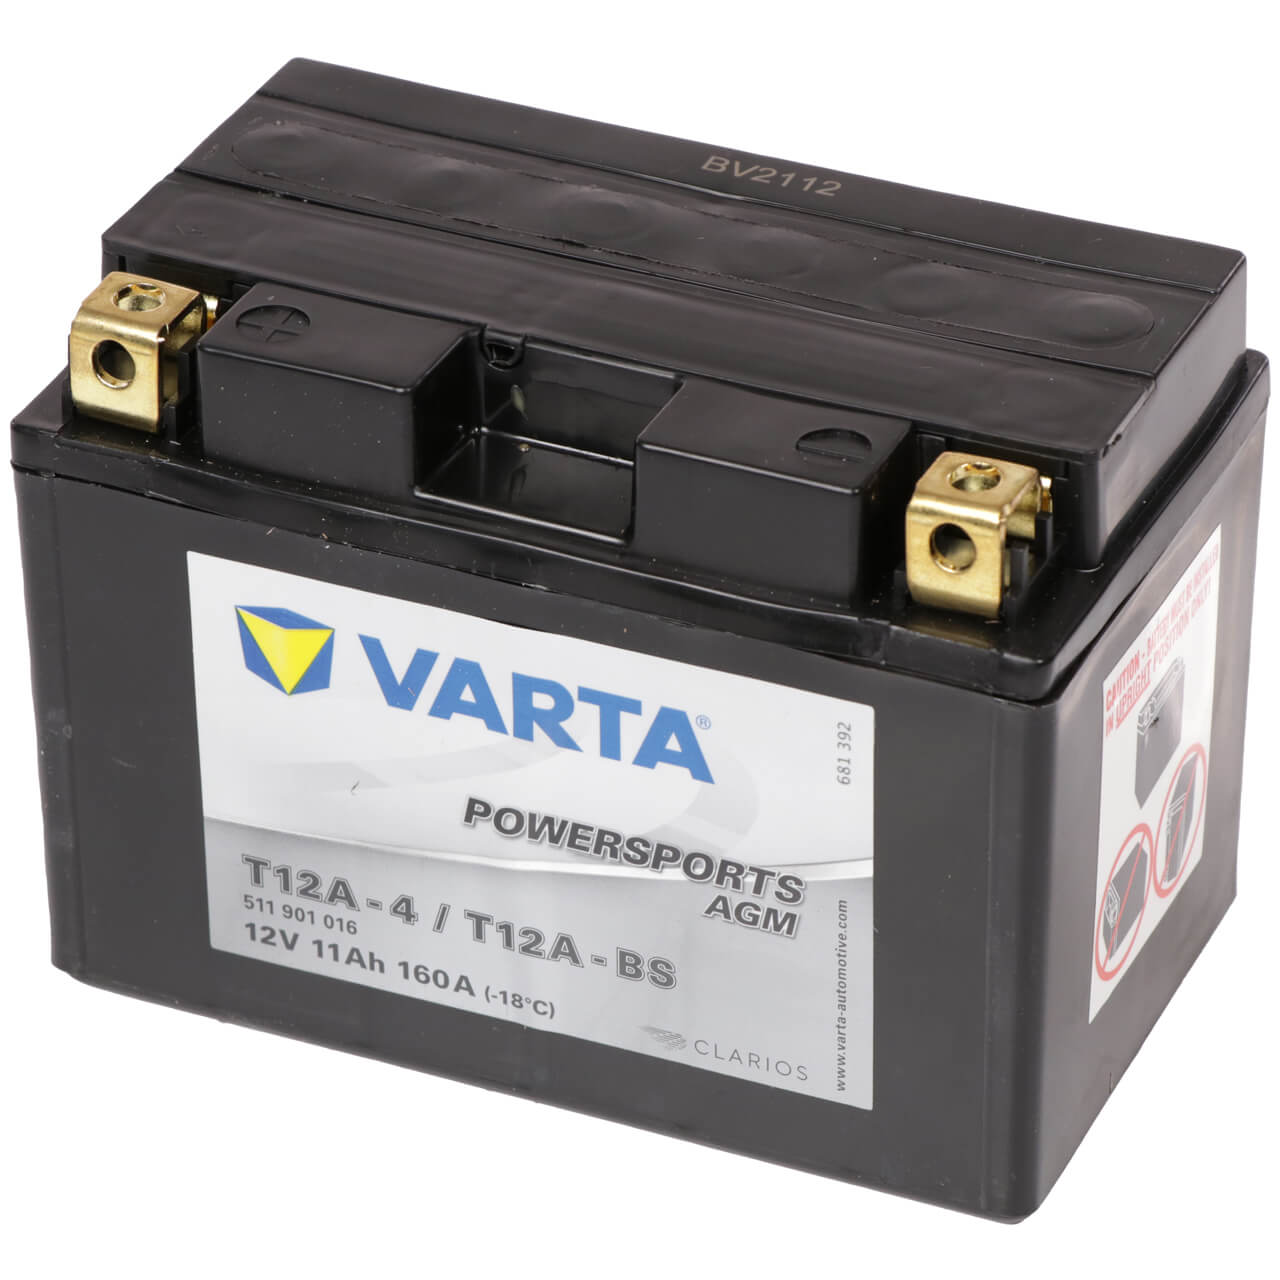 Motorradbatterie Varta Powersports YT12A-BS 511901 12V 11Ah Seite rechts